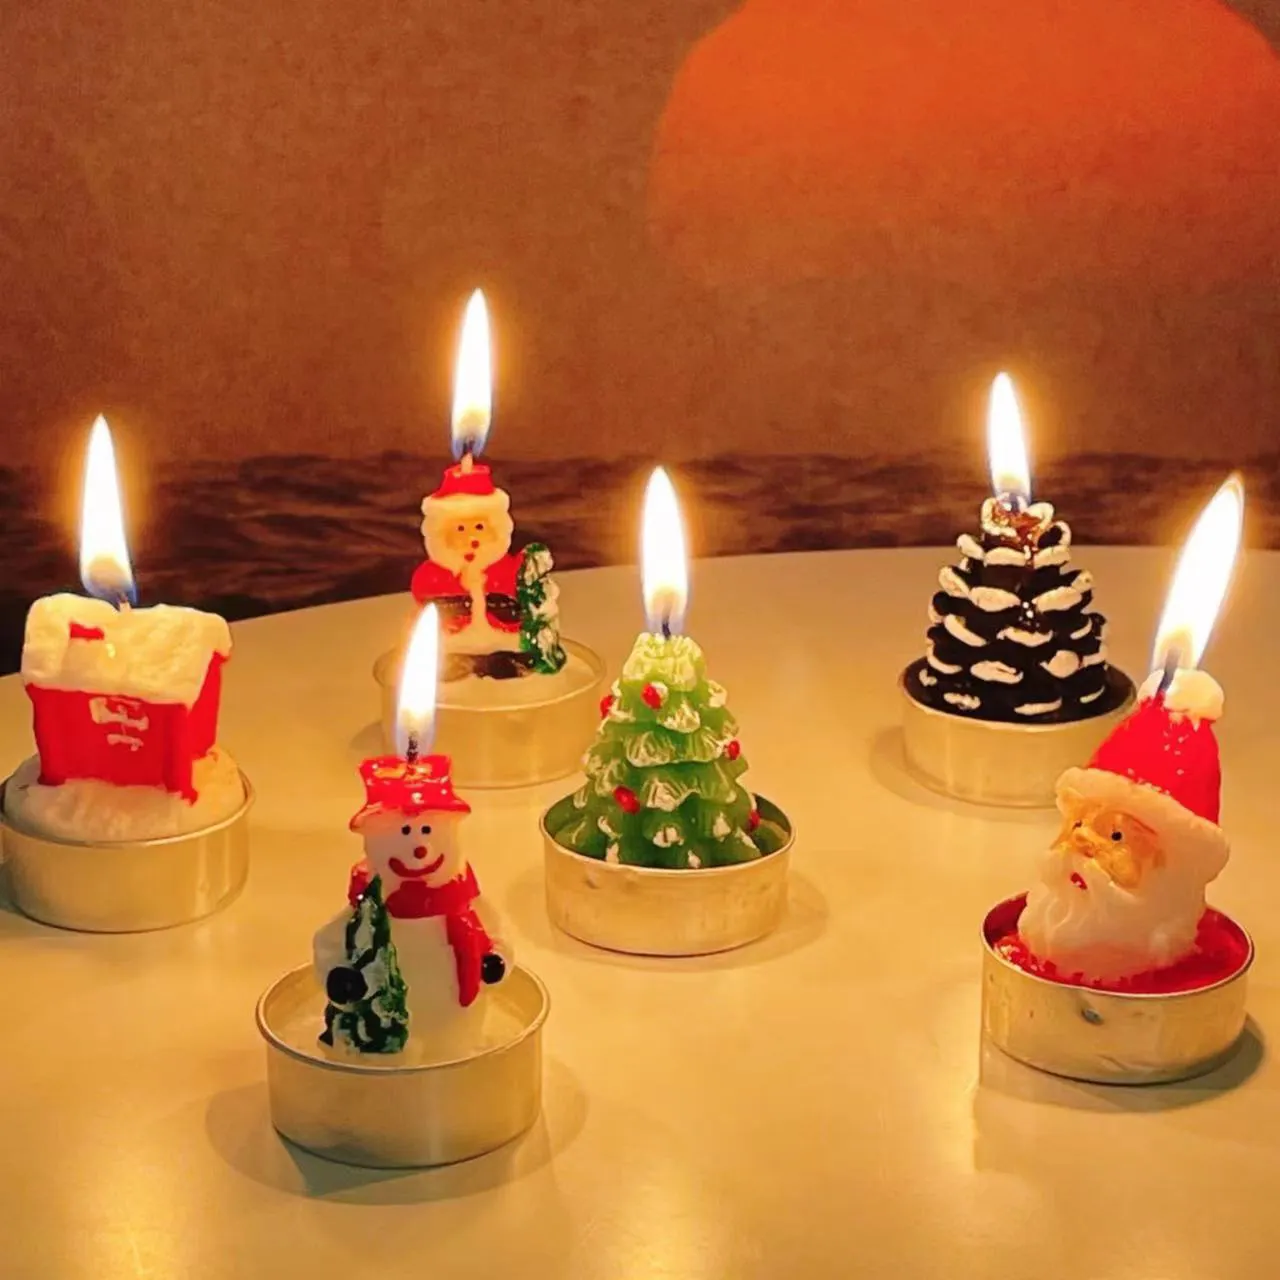 شموع عيد الميلاد الأكثر مبيعًا لوازم زينة عيد الميلاد الشموع